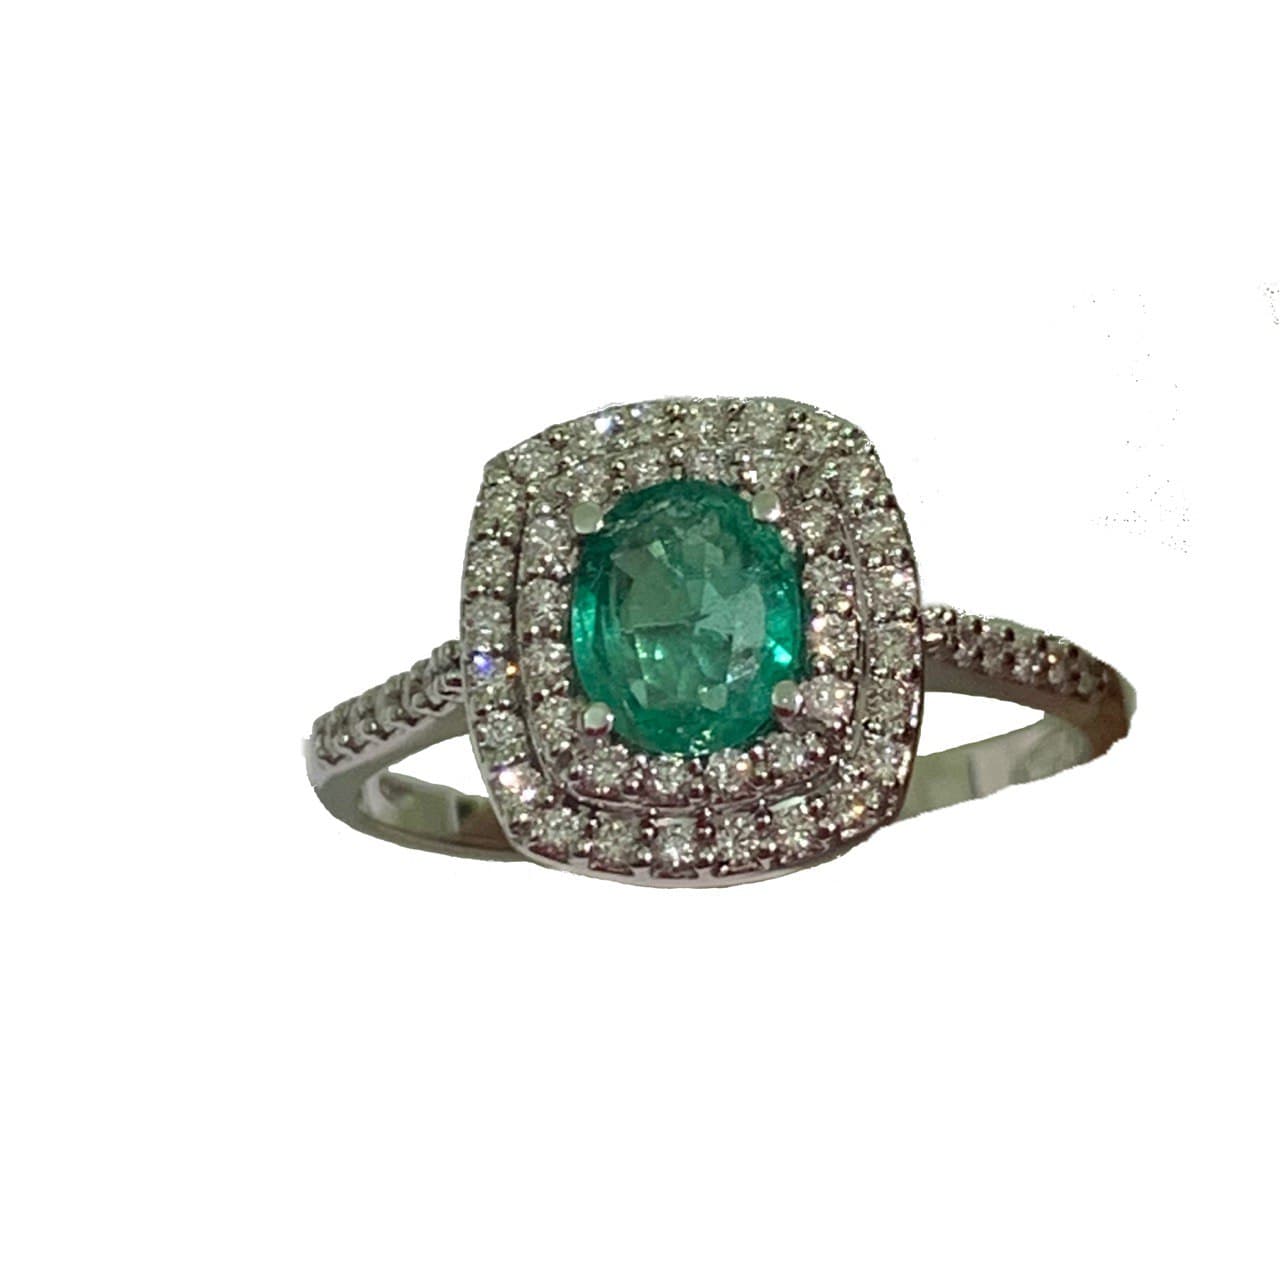 Anello in oro bianco 18kt con smeraldo circondato da diamanti.  Diamanti 0,20 carati.  Smeraldo di 0,4 carati, dimensione 0,5 cm.  Dimensione totale 1 cm.  Misura 15.